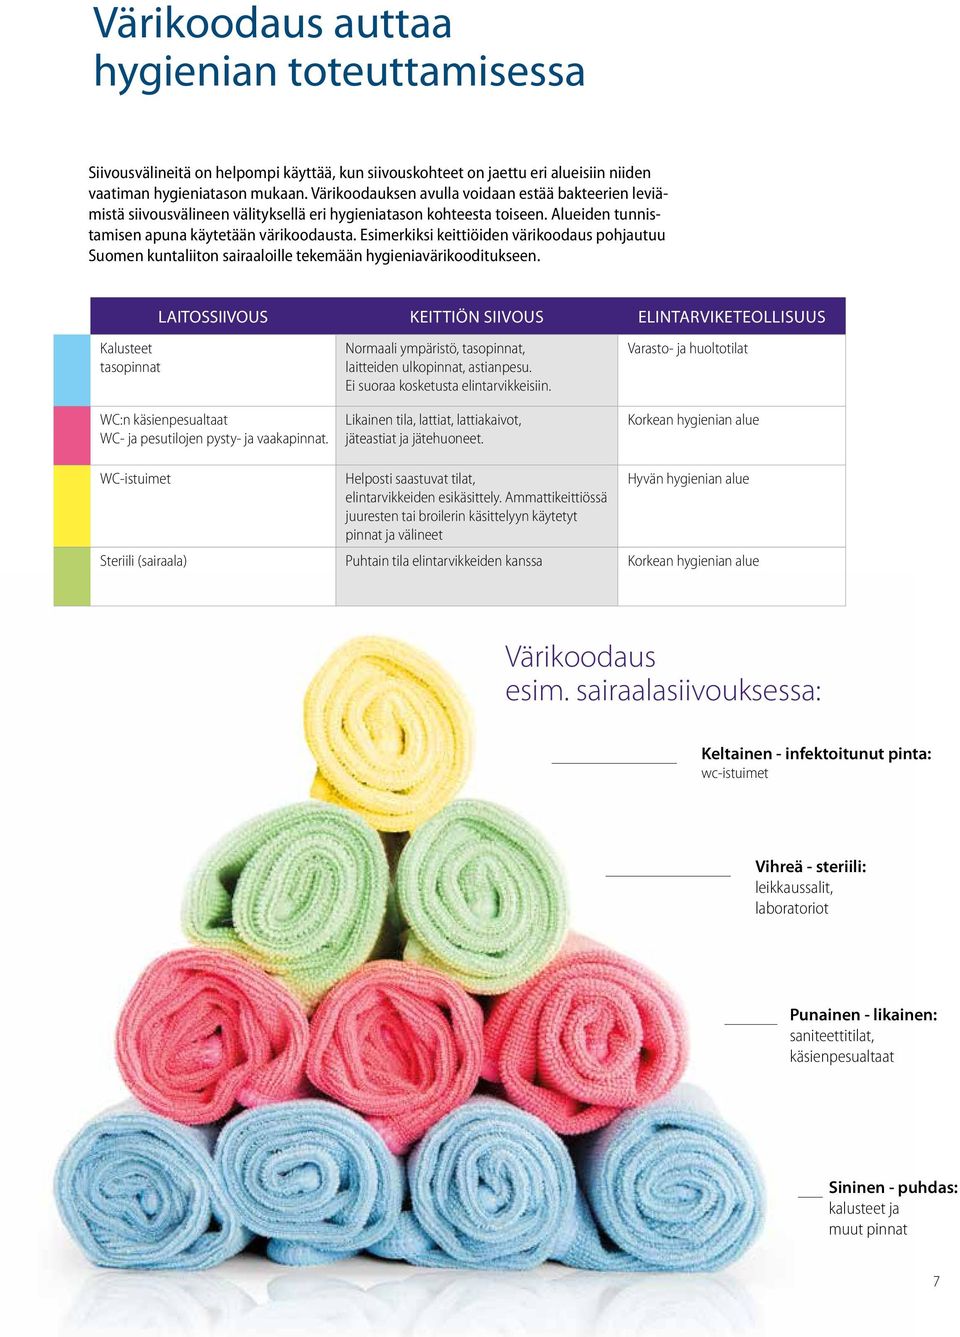 Esimerkiksi keittiöiden värikoodaus pohjautuu Suomen kuntaliiton sairaaloille tekemään hygieniavärikooditukseen.